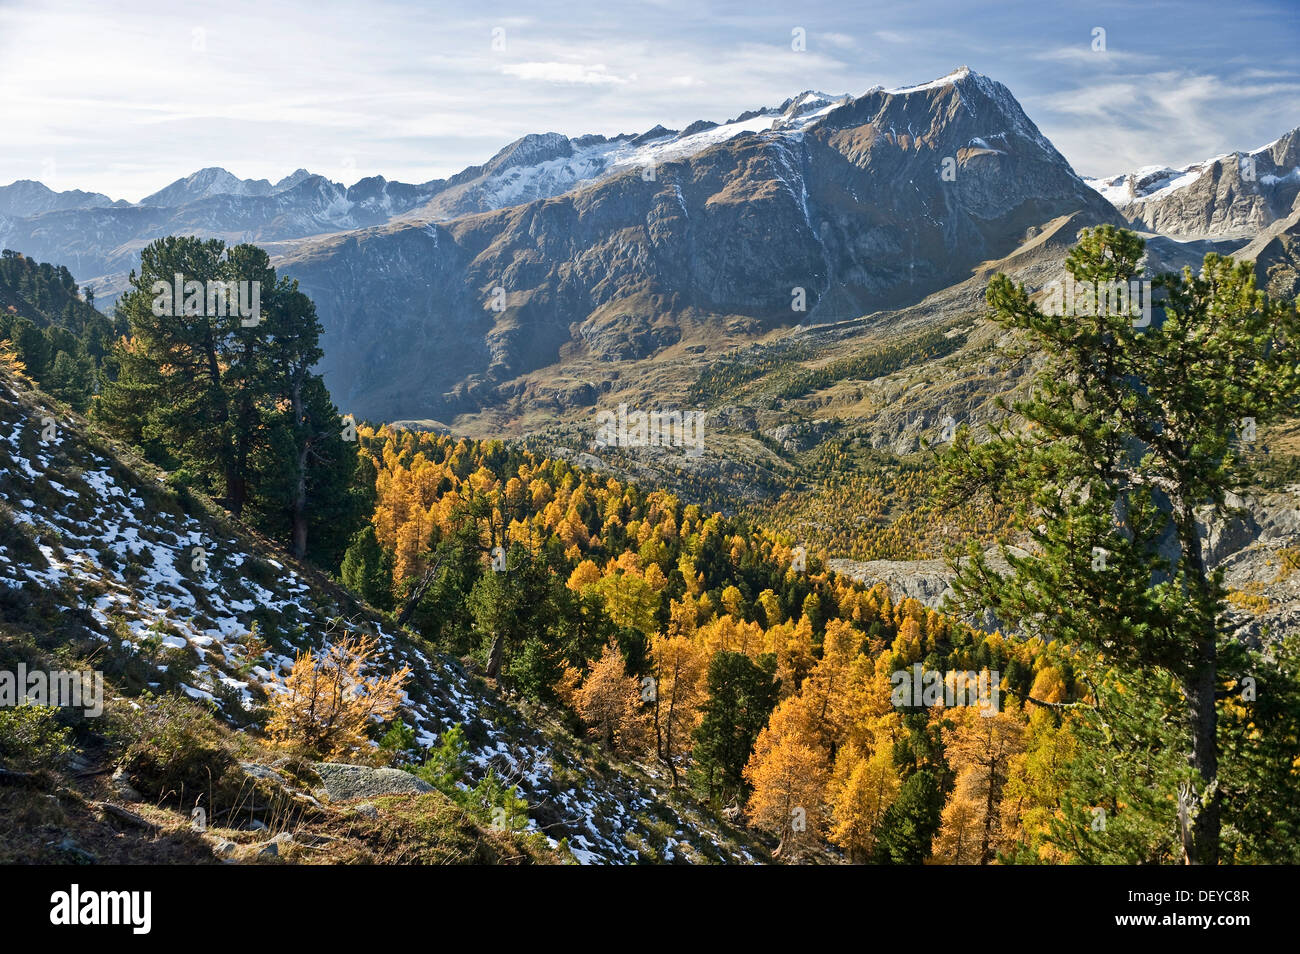 Forêt d'Aletsch, UNESCO World Heritage Site, Valais, Suisse, Europe Banque D'Images